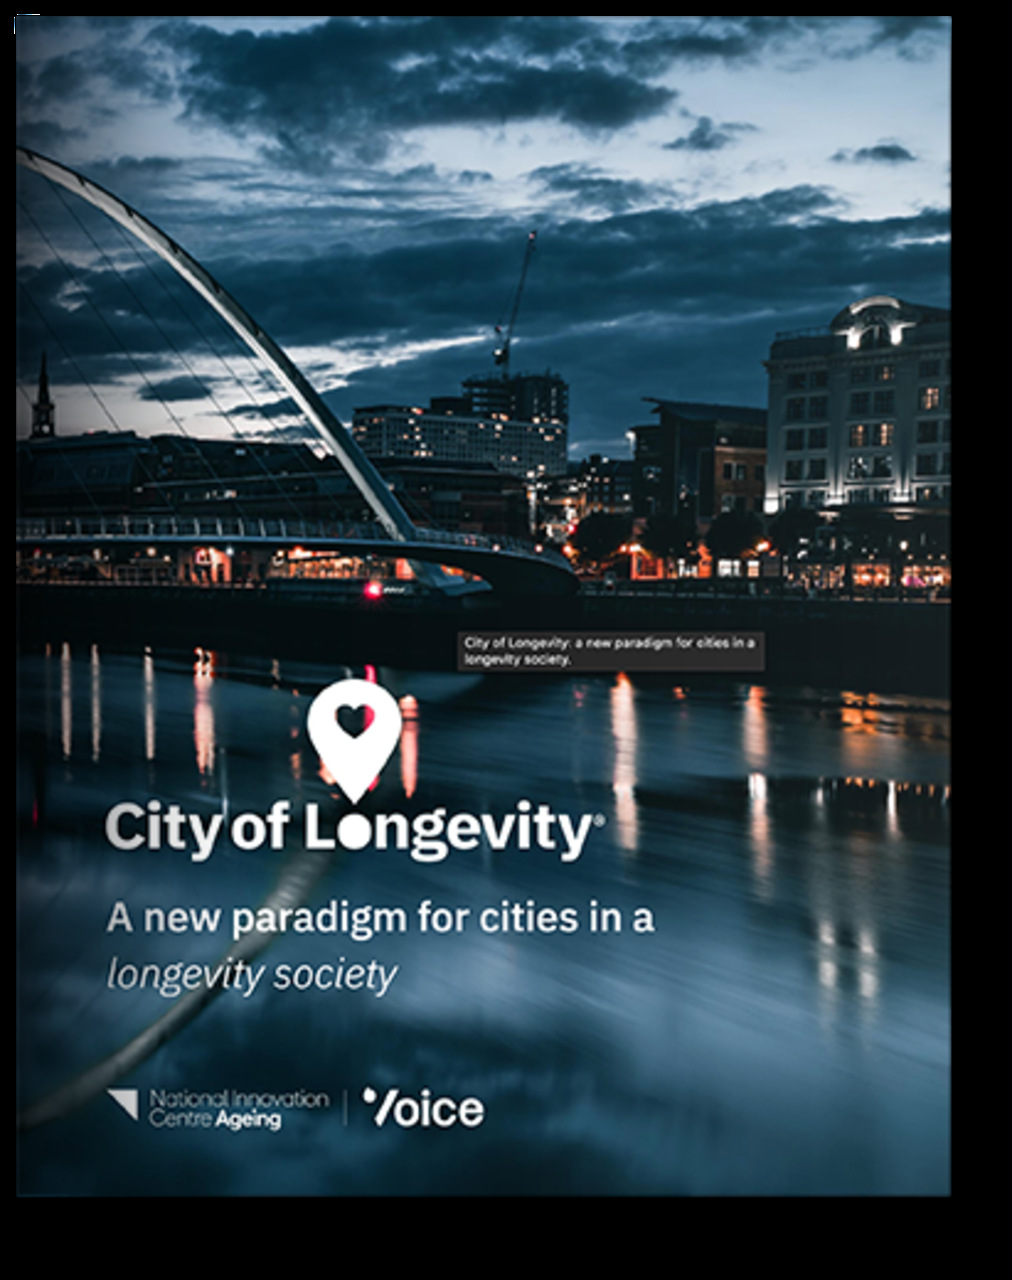 City of Longevity: broschyren om projektpresentation